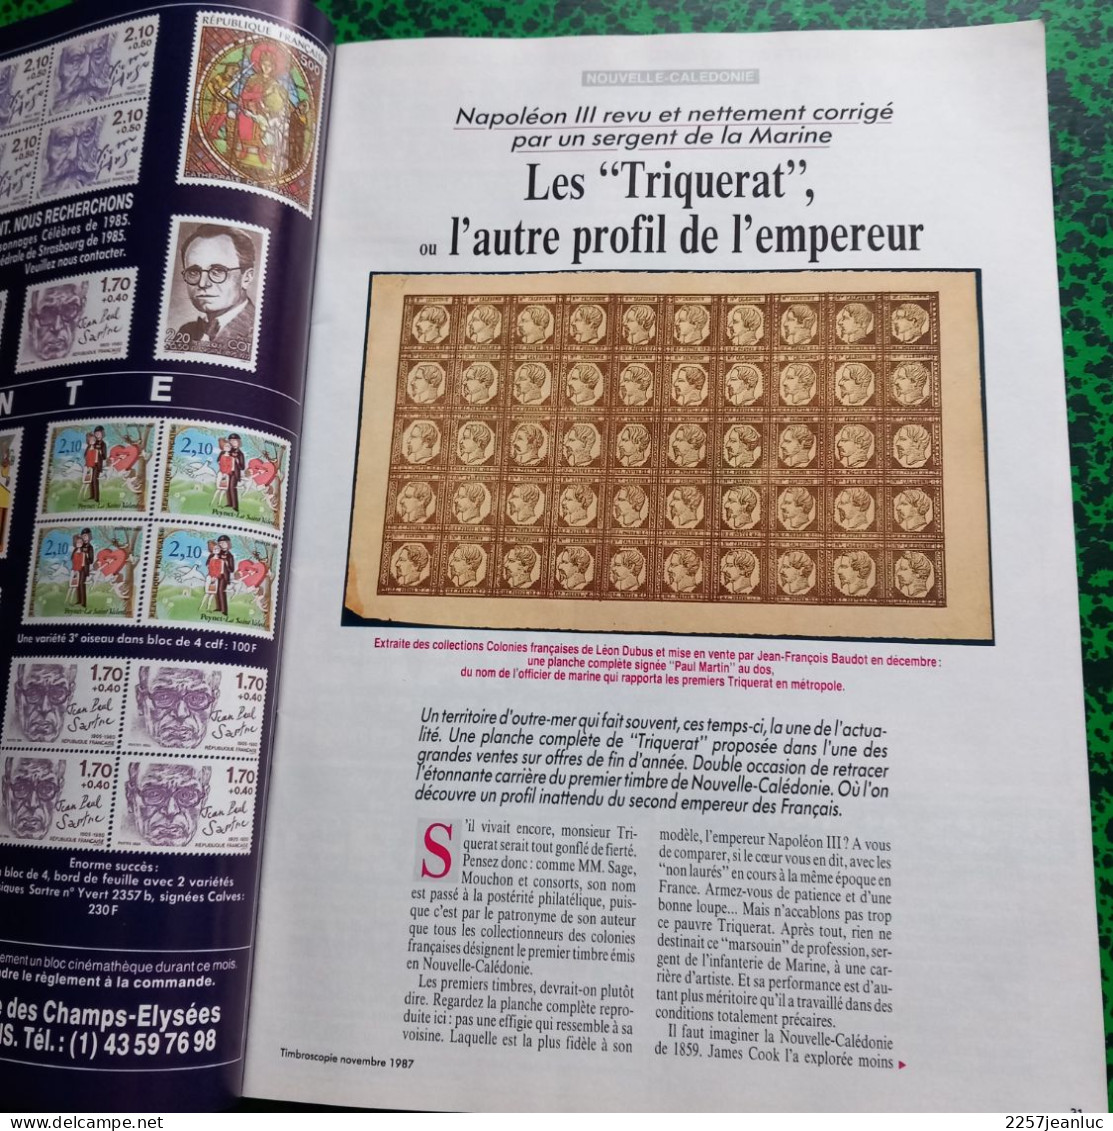 Magazines De La Philatélie * Timbroscopie N:41 De Novembre 1987 * Honneur à Blaise Cendrars .. - Français (àpd. 1941)